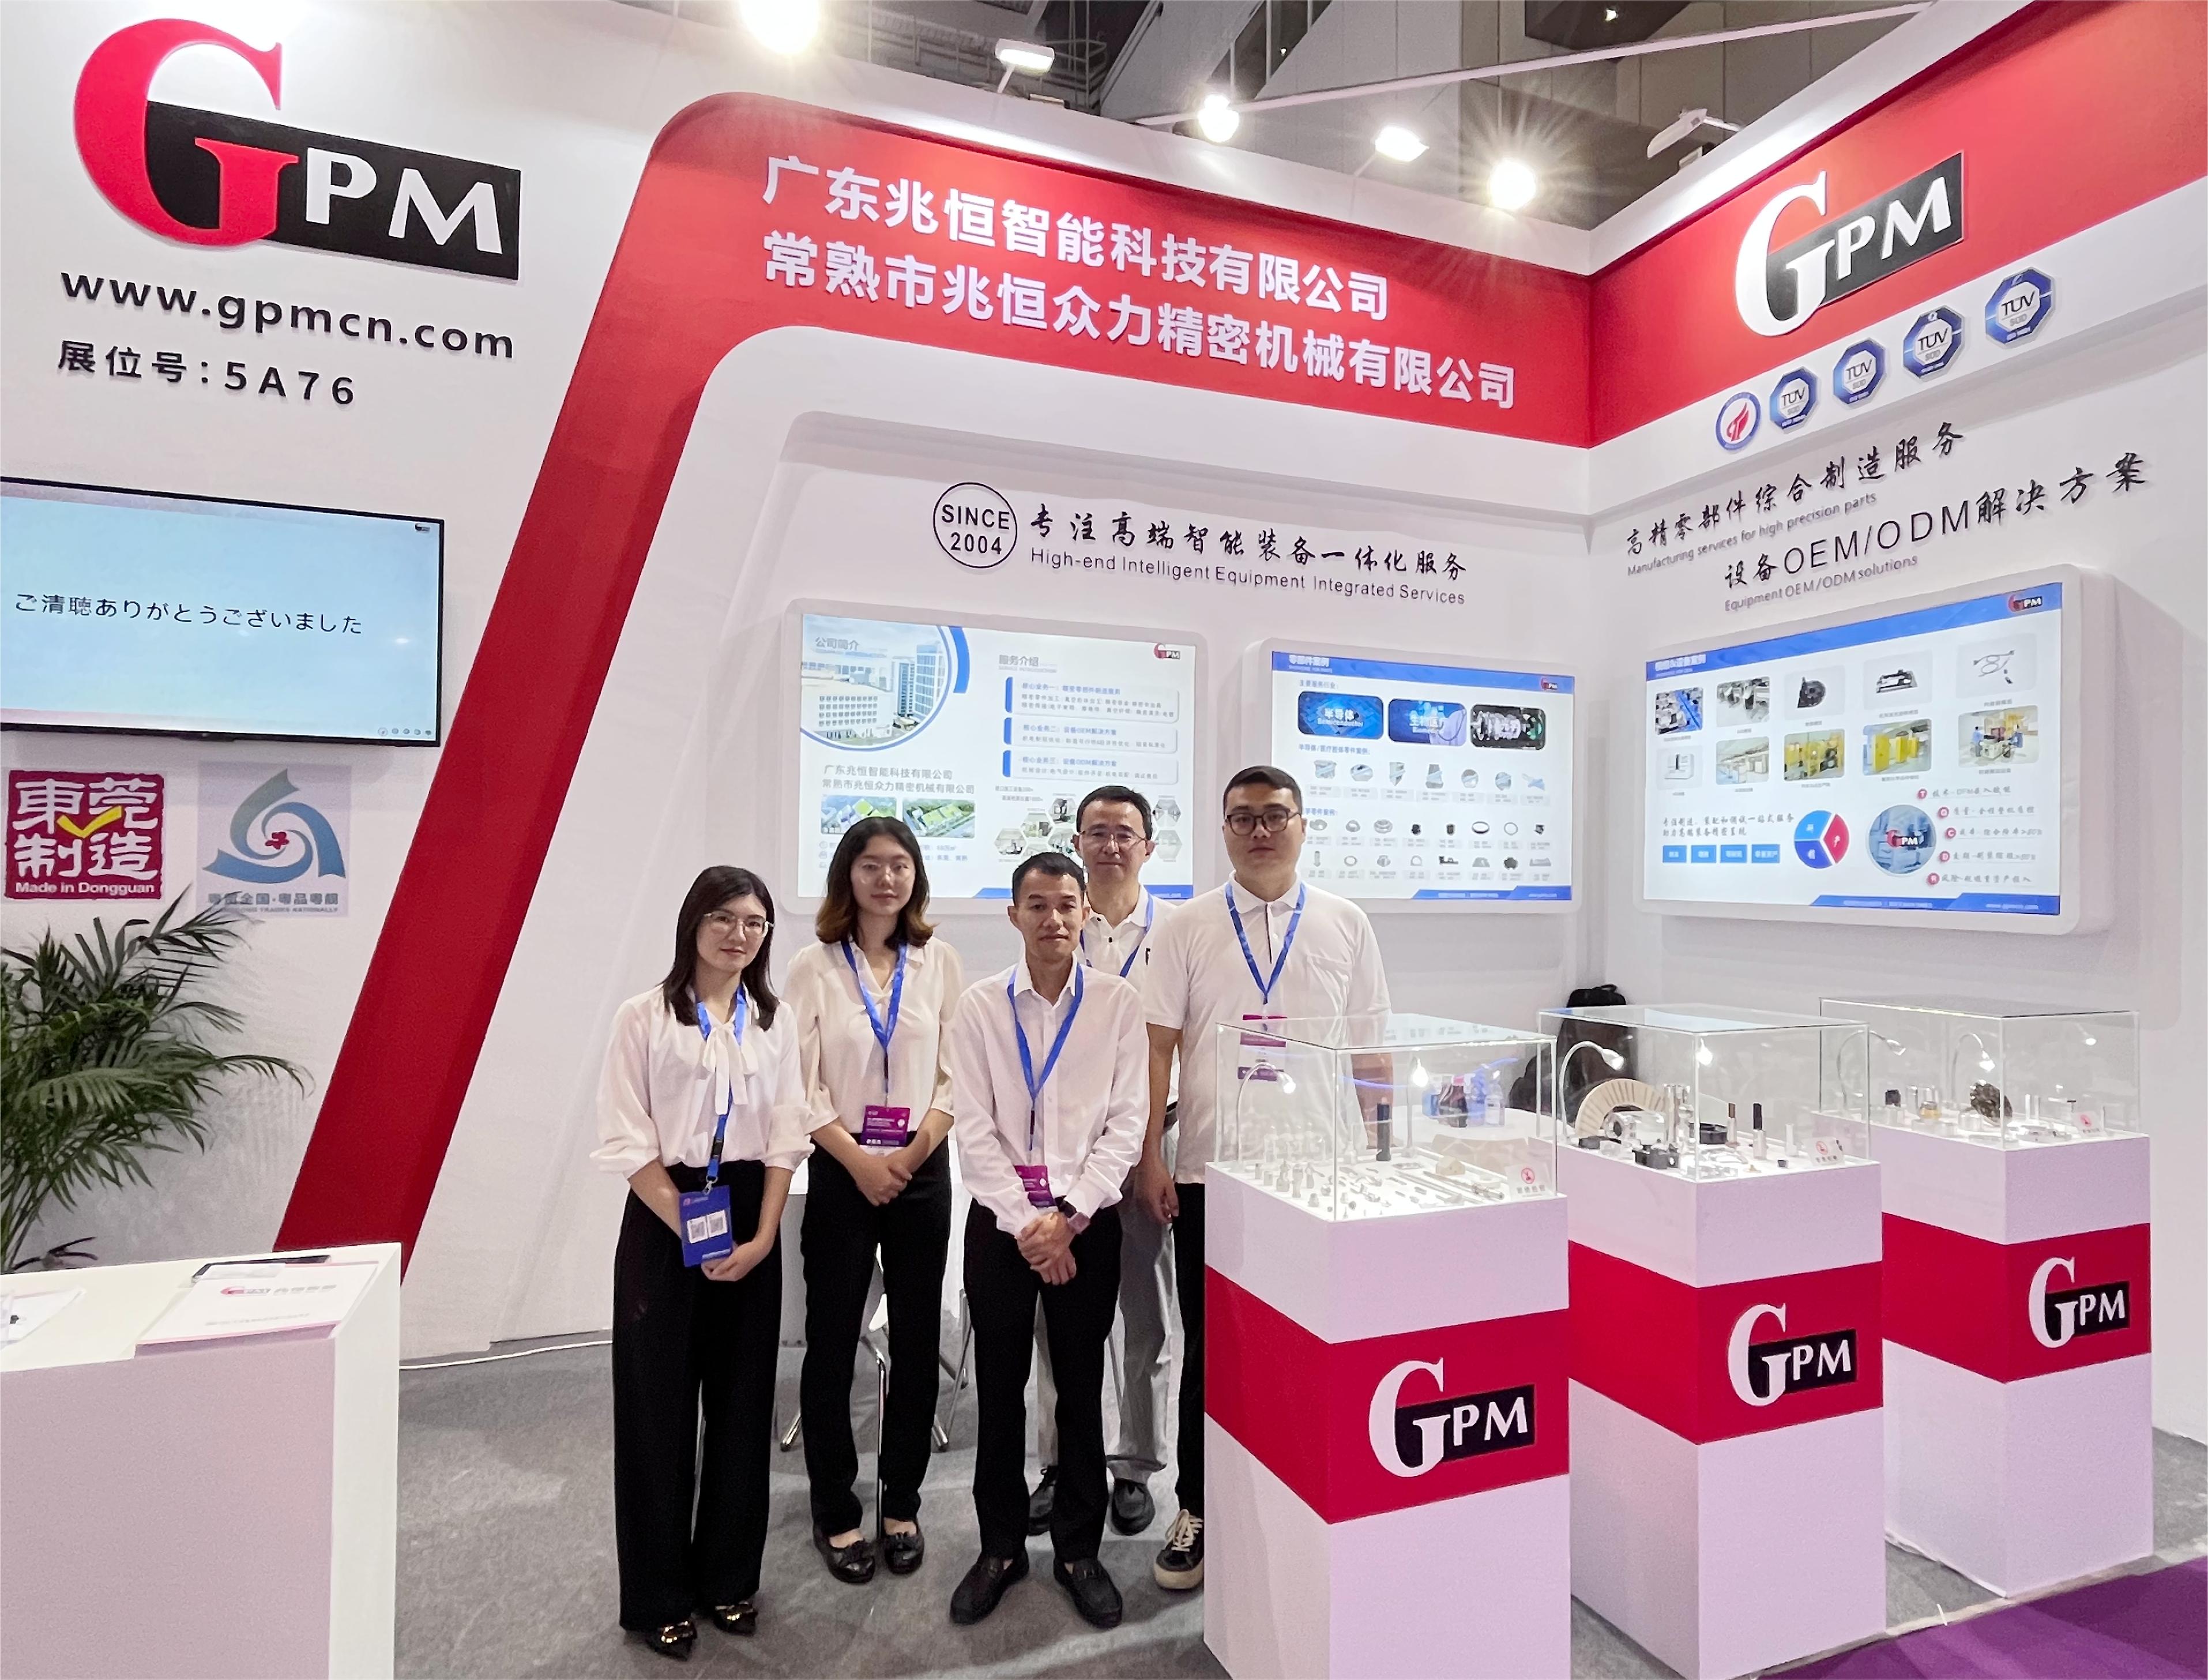 GPM Қытайдың халықаралық оптоэлектрондық көрмесінде жетекші технологияны көрсетеді